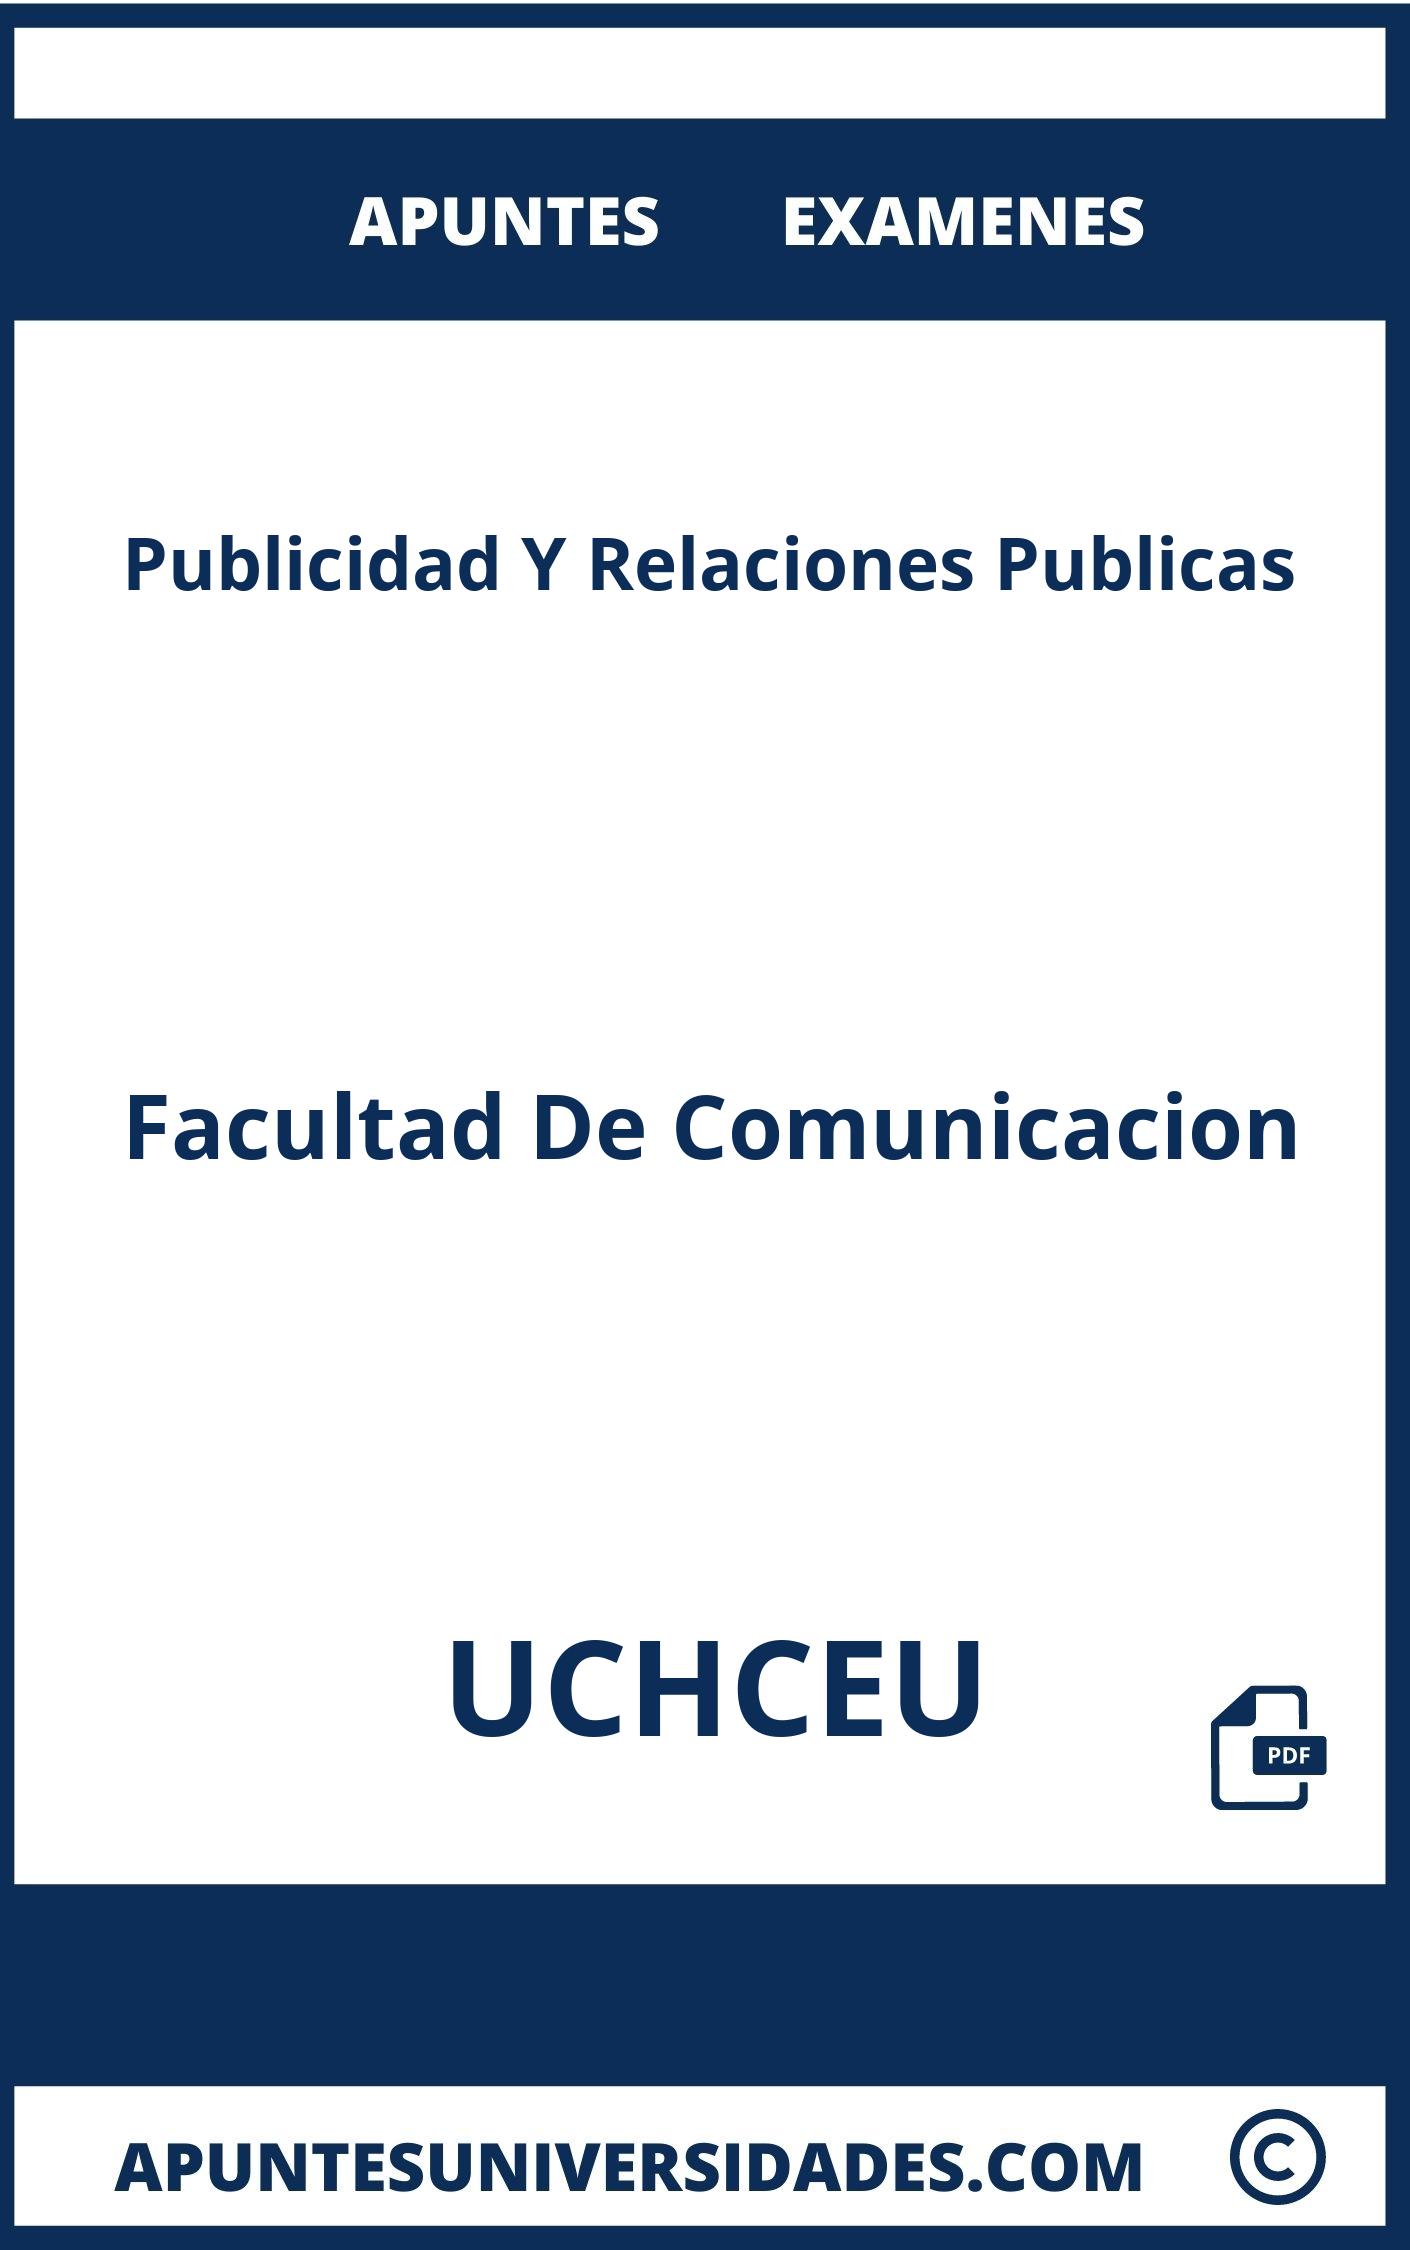 Publicidad Y Relaciones Publicas UCHCEU Apuntes Examenes